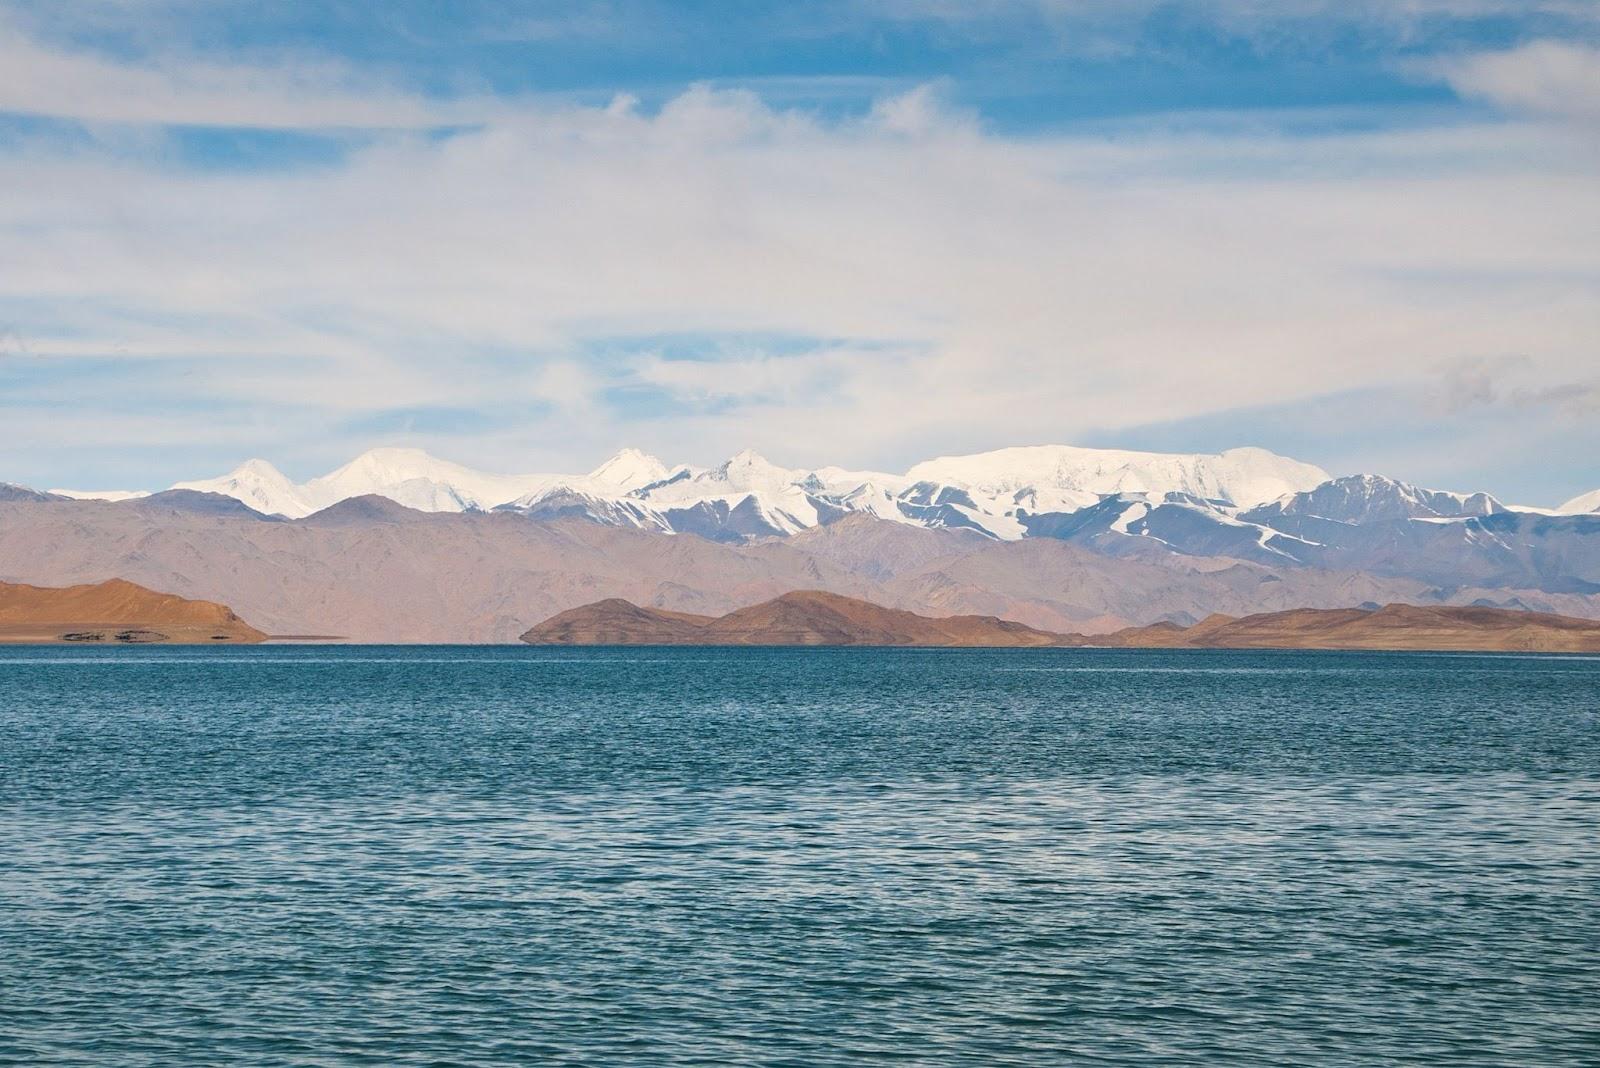 Lake Kara-Kul during the day © Oleg Belyakov / Shutterstock